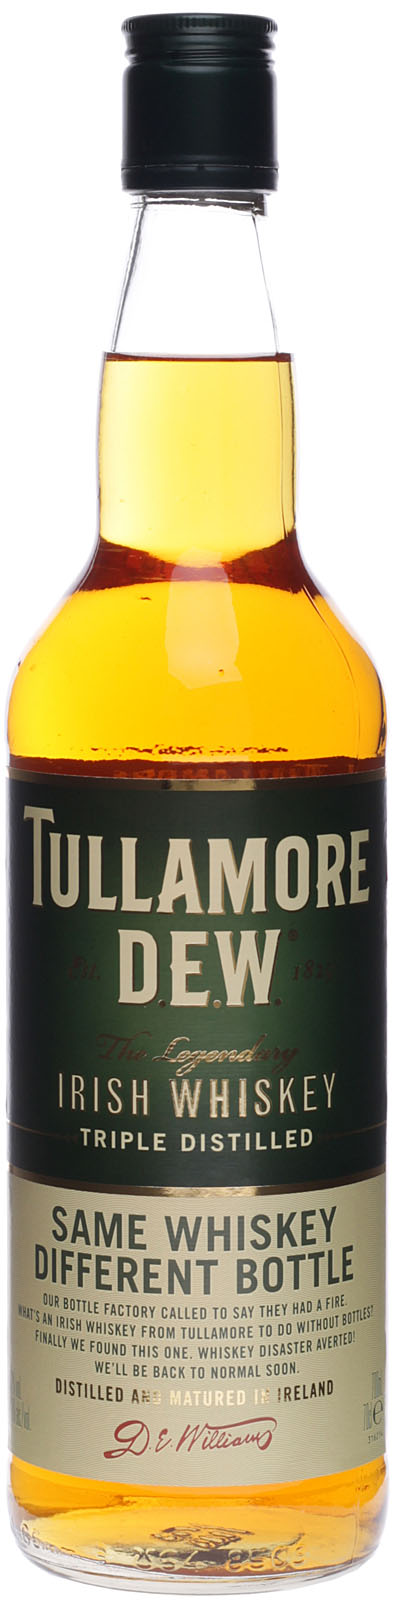 Tullamore Dew kaufen günstig Irish Whiskey online